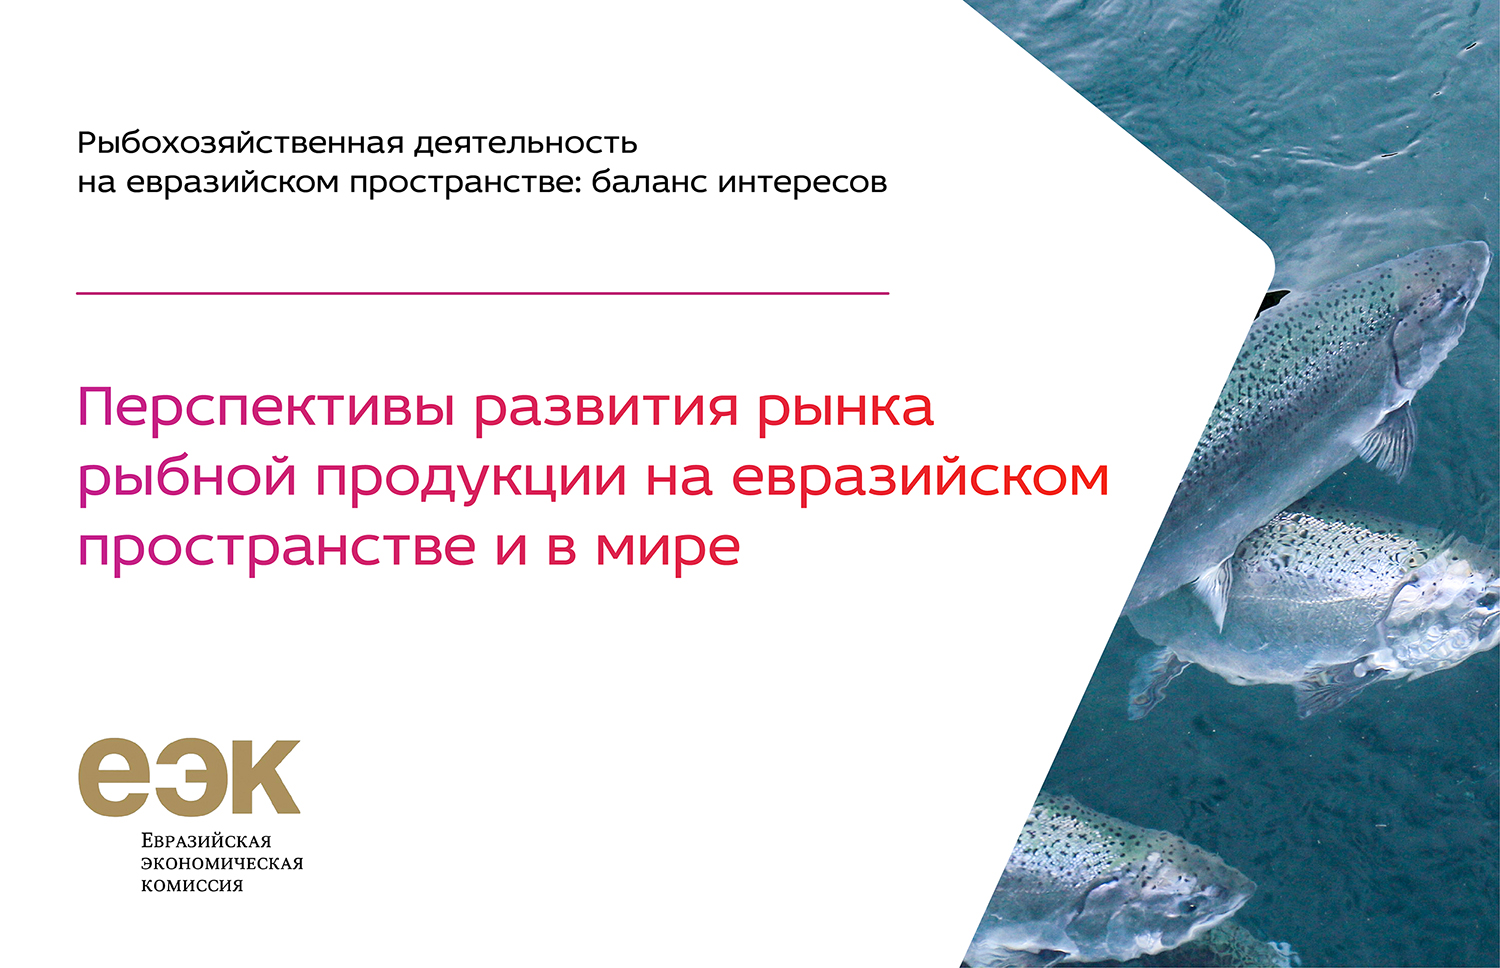 Перспективы развития рынка рыбной продукции ﻿на евразийском пространстве и в мире